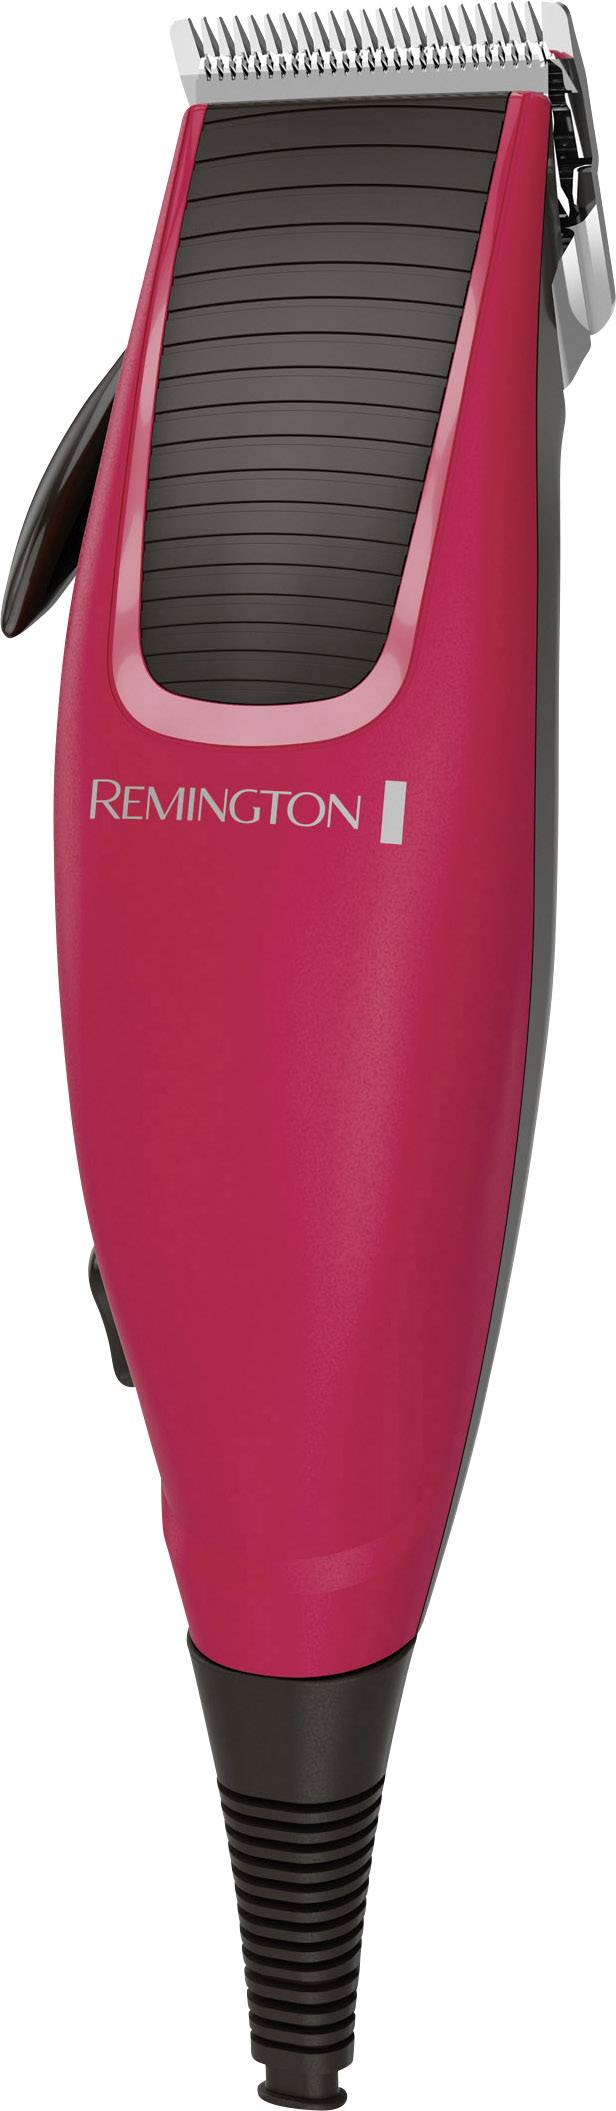 remington hc5018 hair clipper